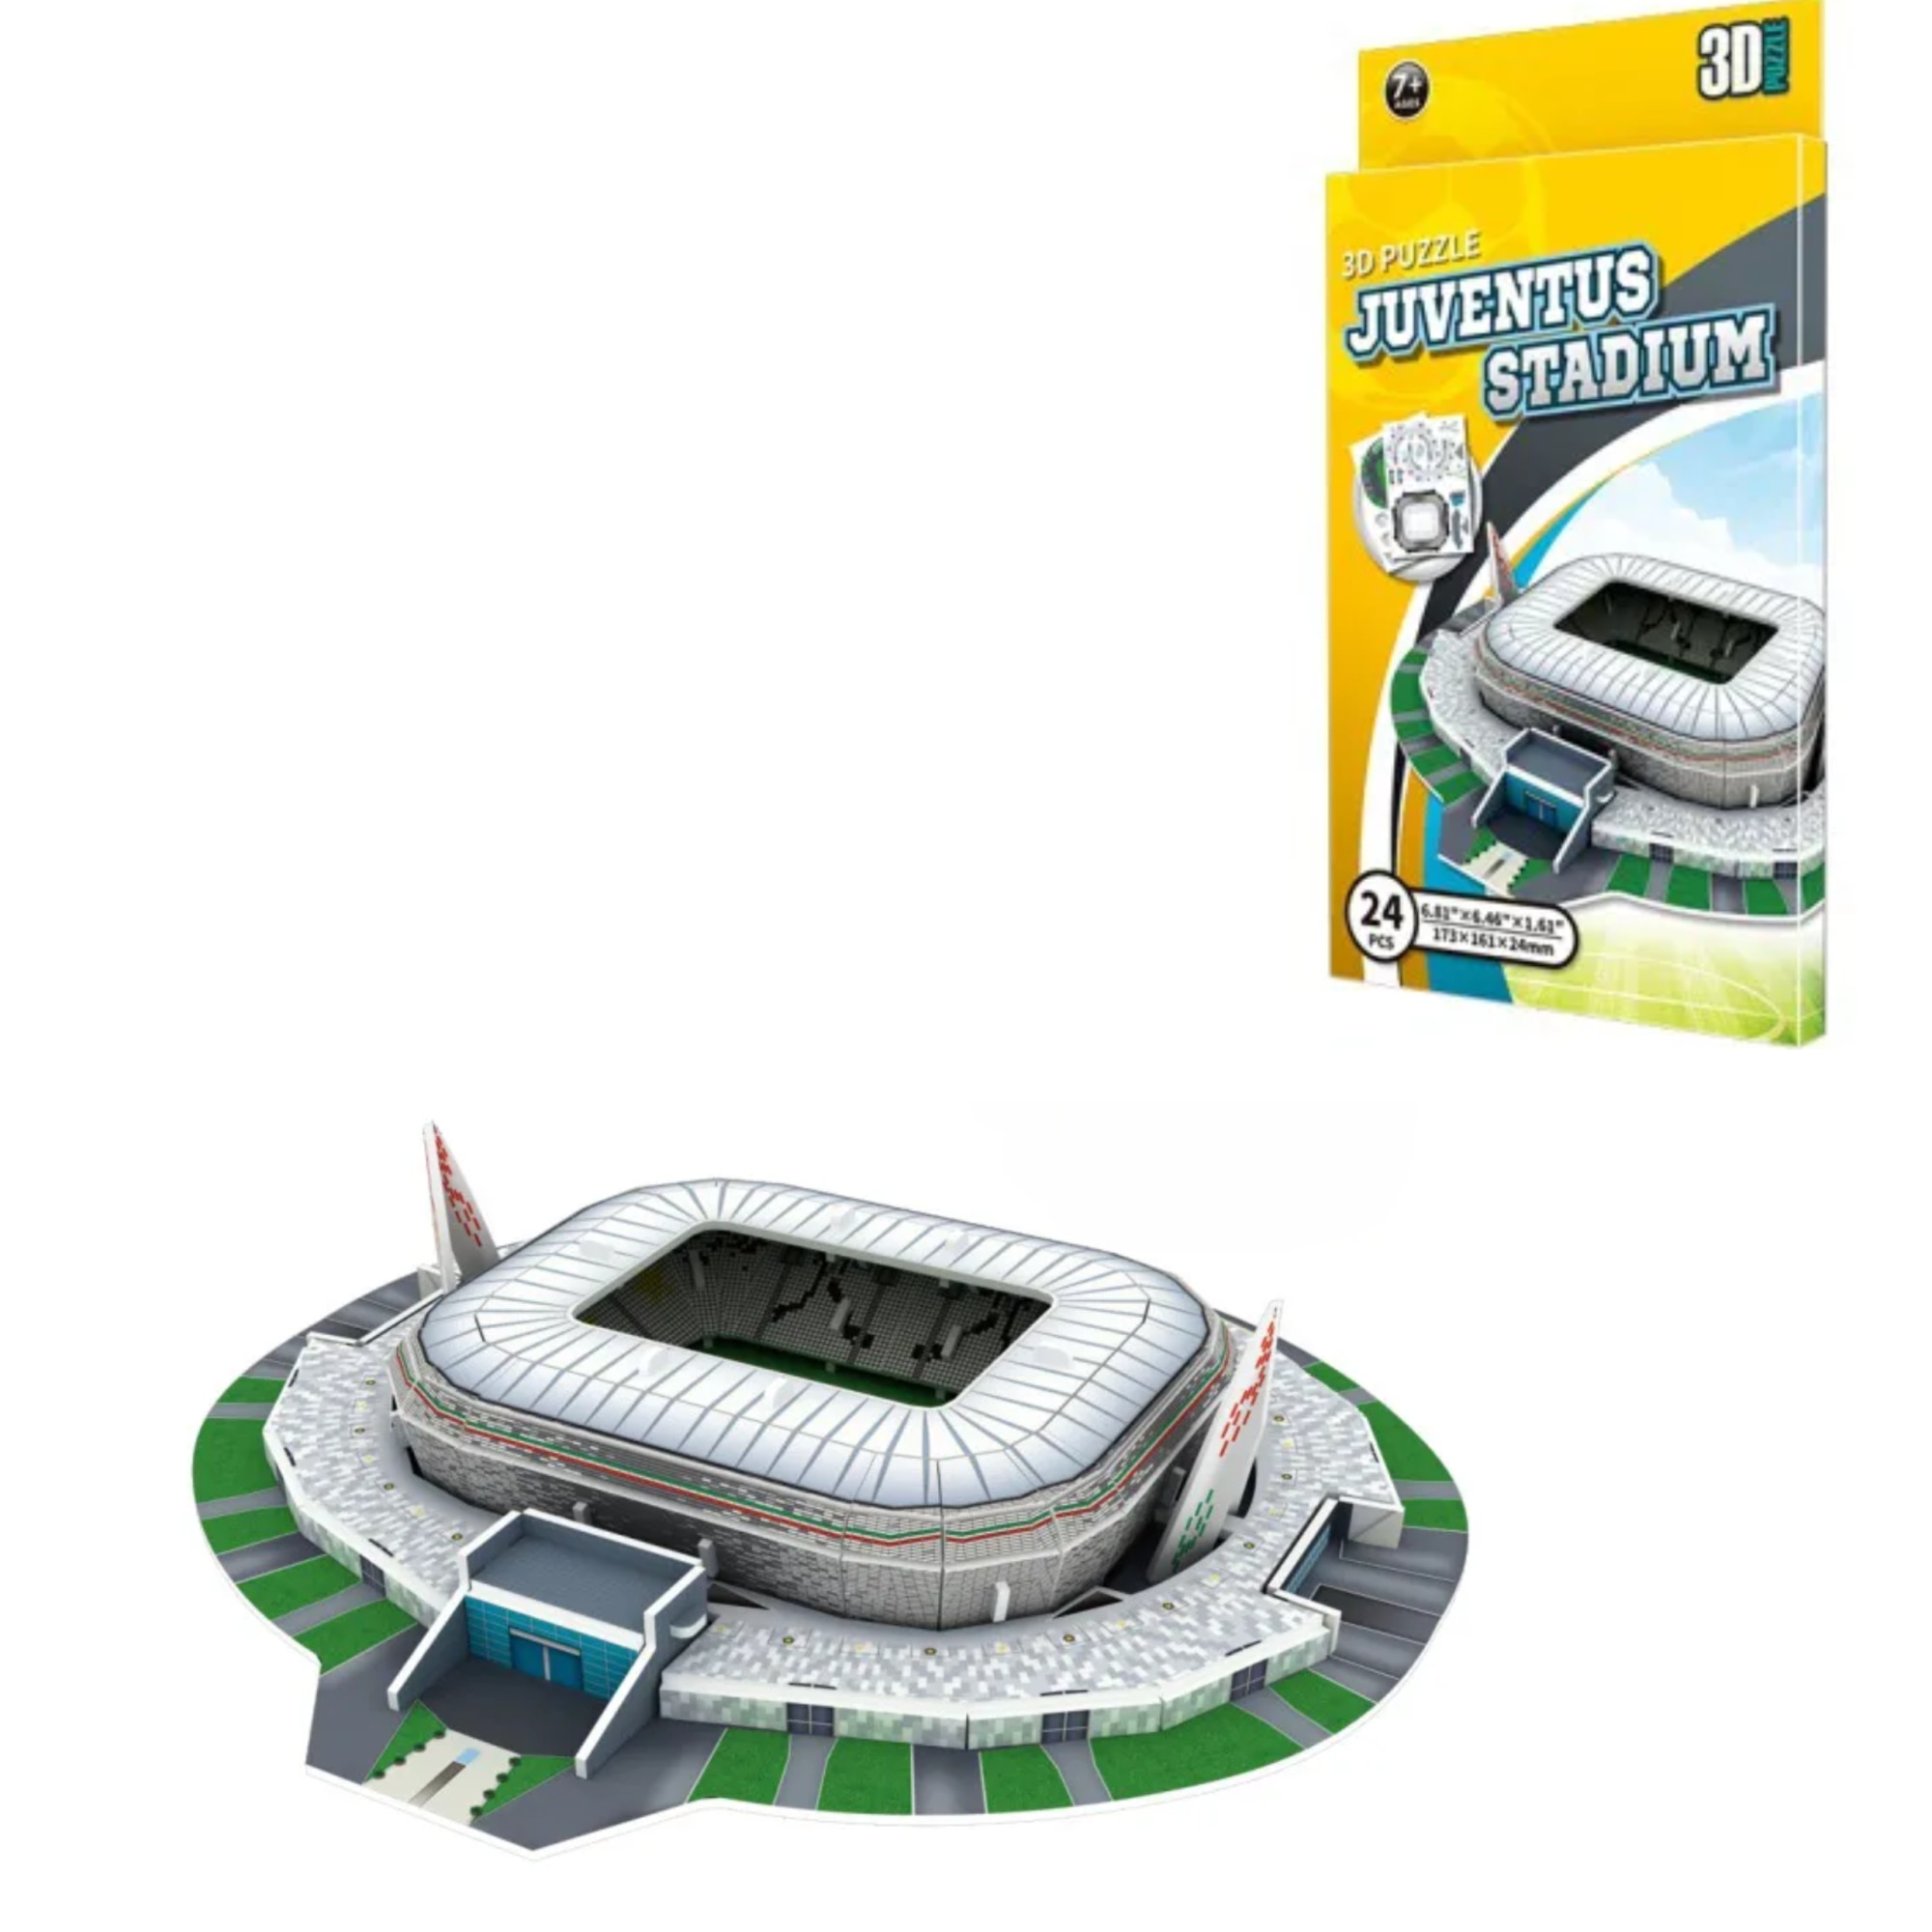 3D Allianz Stadium Juventus 